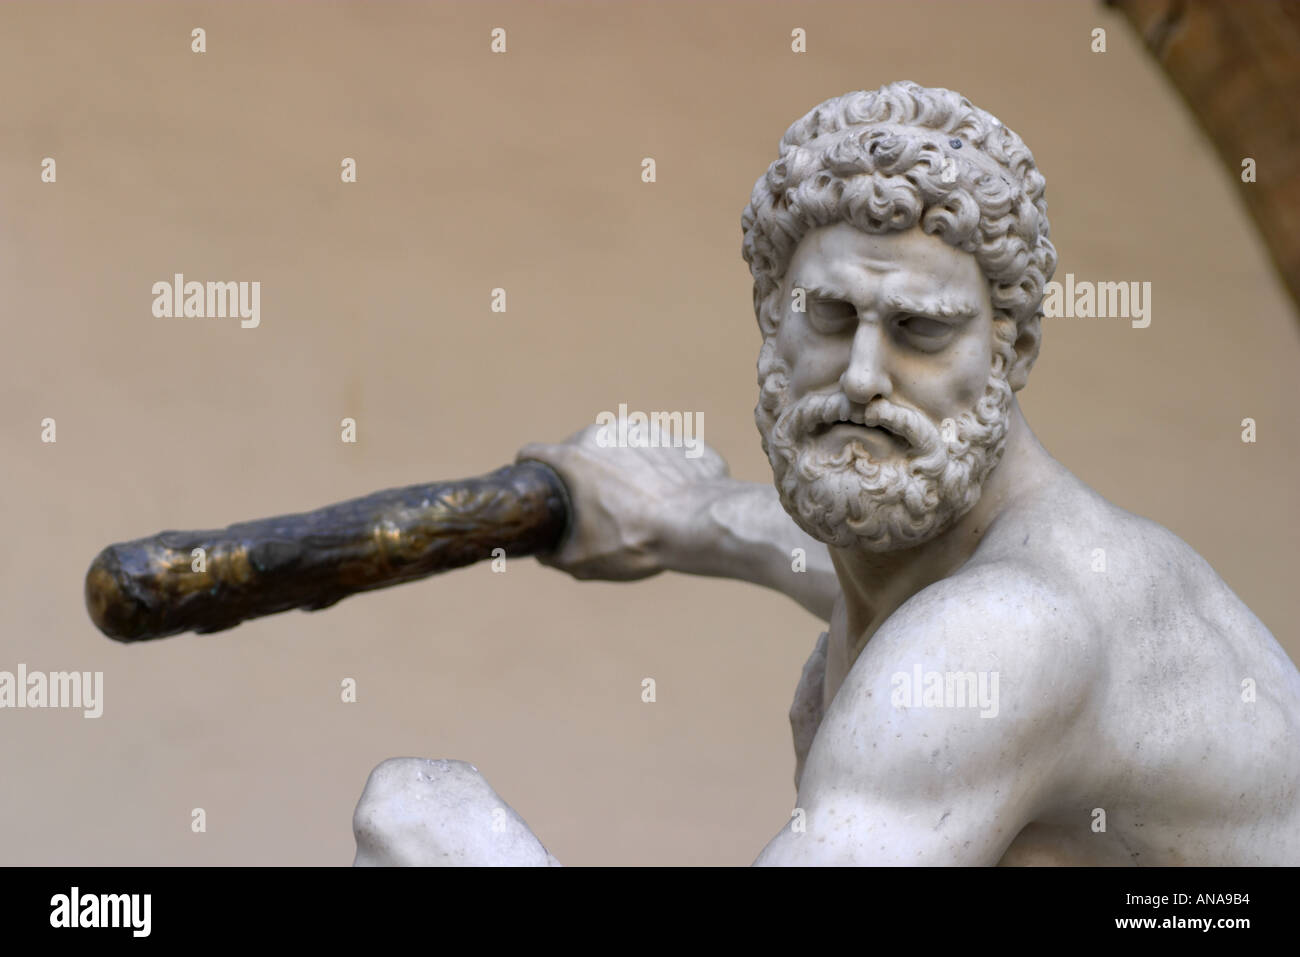 L'Hercules de la statue d'Héraclès, la lutte contre le centaure Nessus Loggia dei Lanzi Florence Italie Banque D'Images